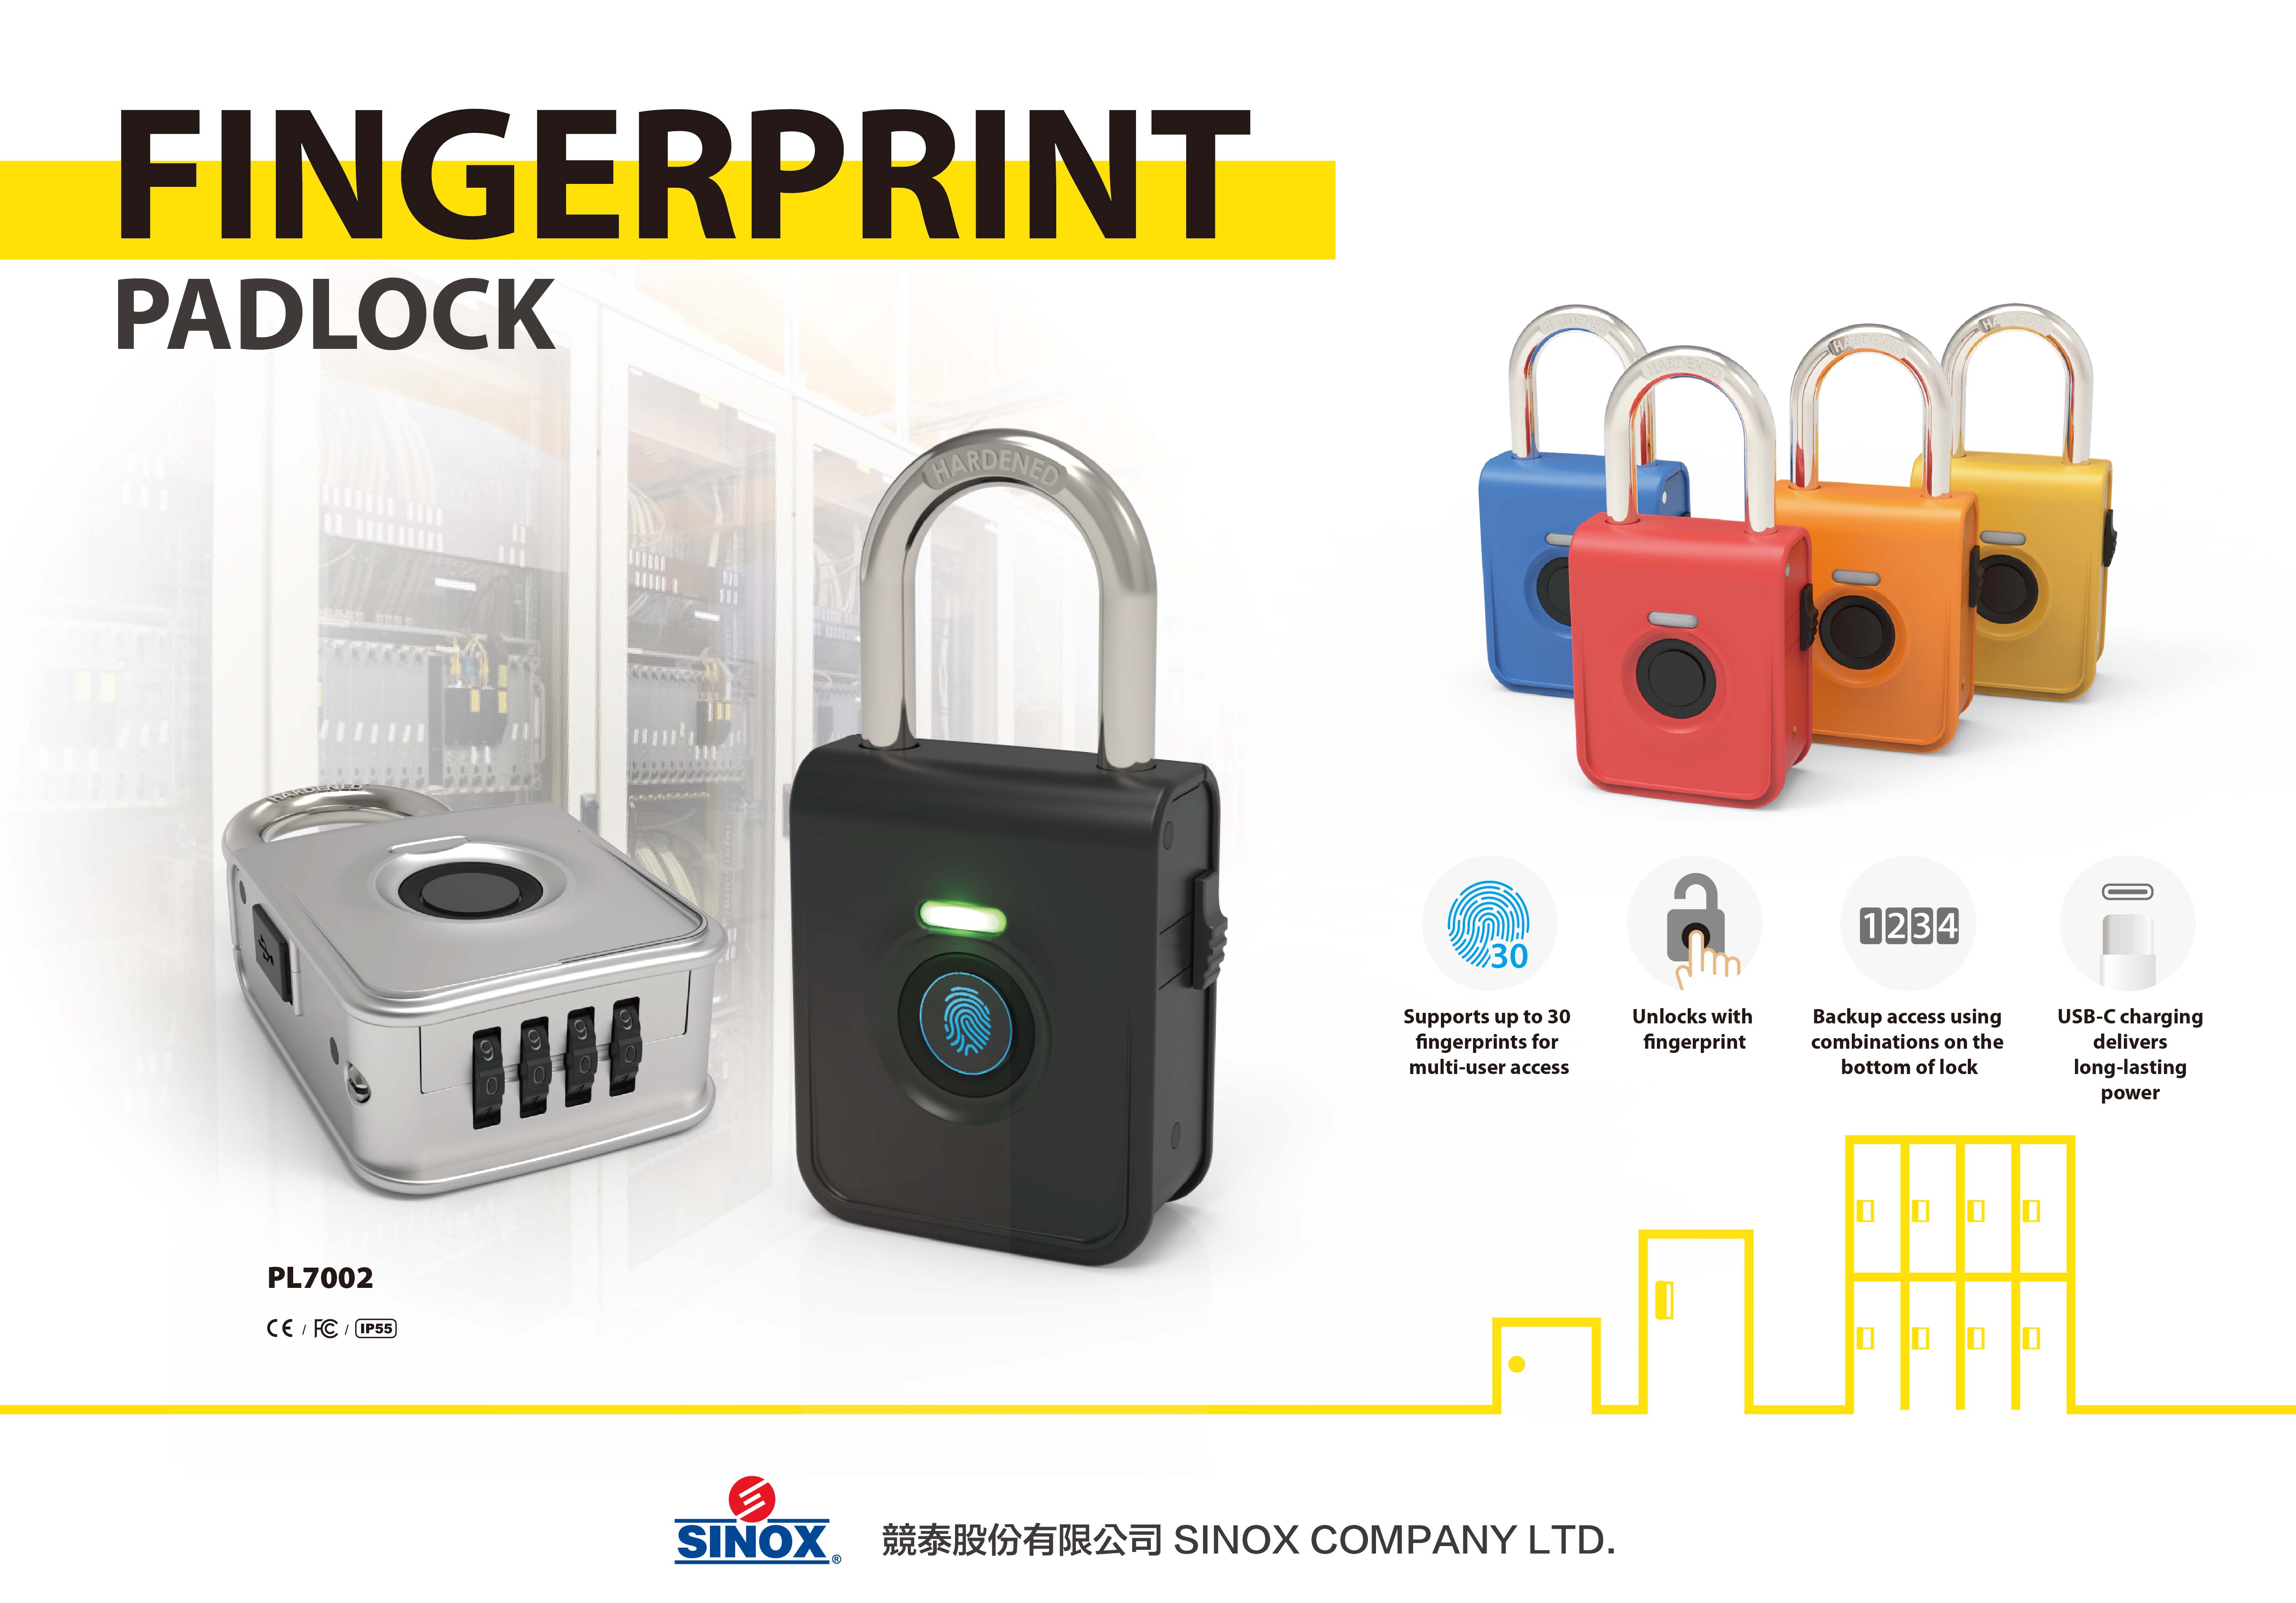 SINOX PL7002 Fingerprint Padlock